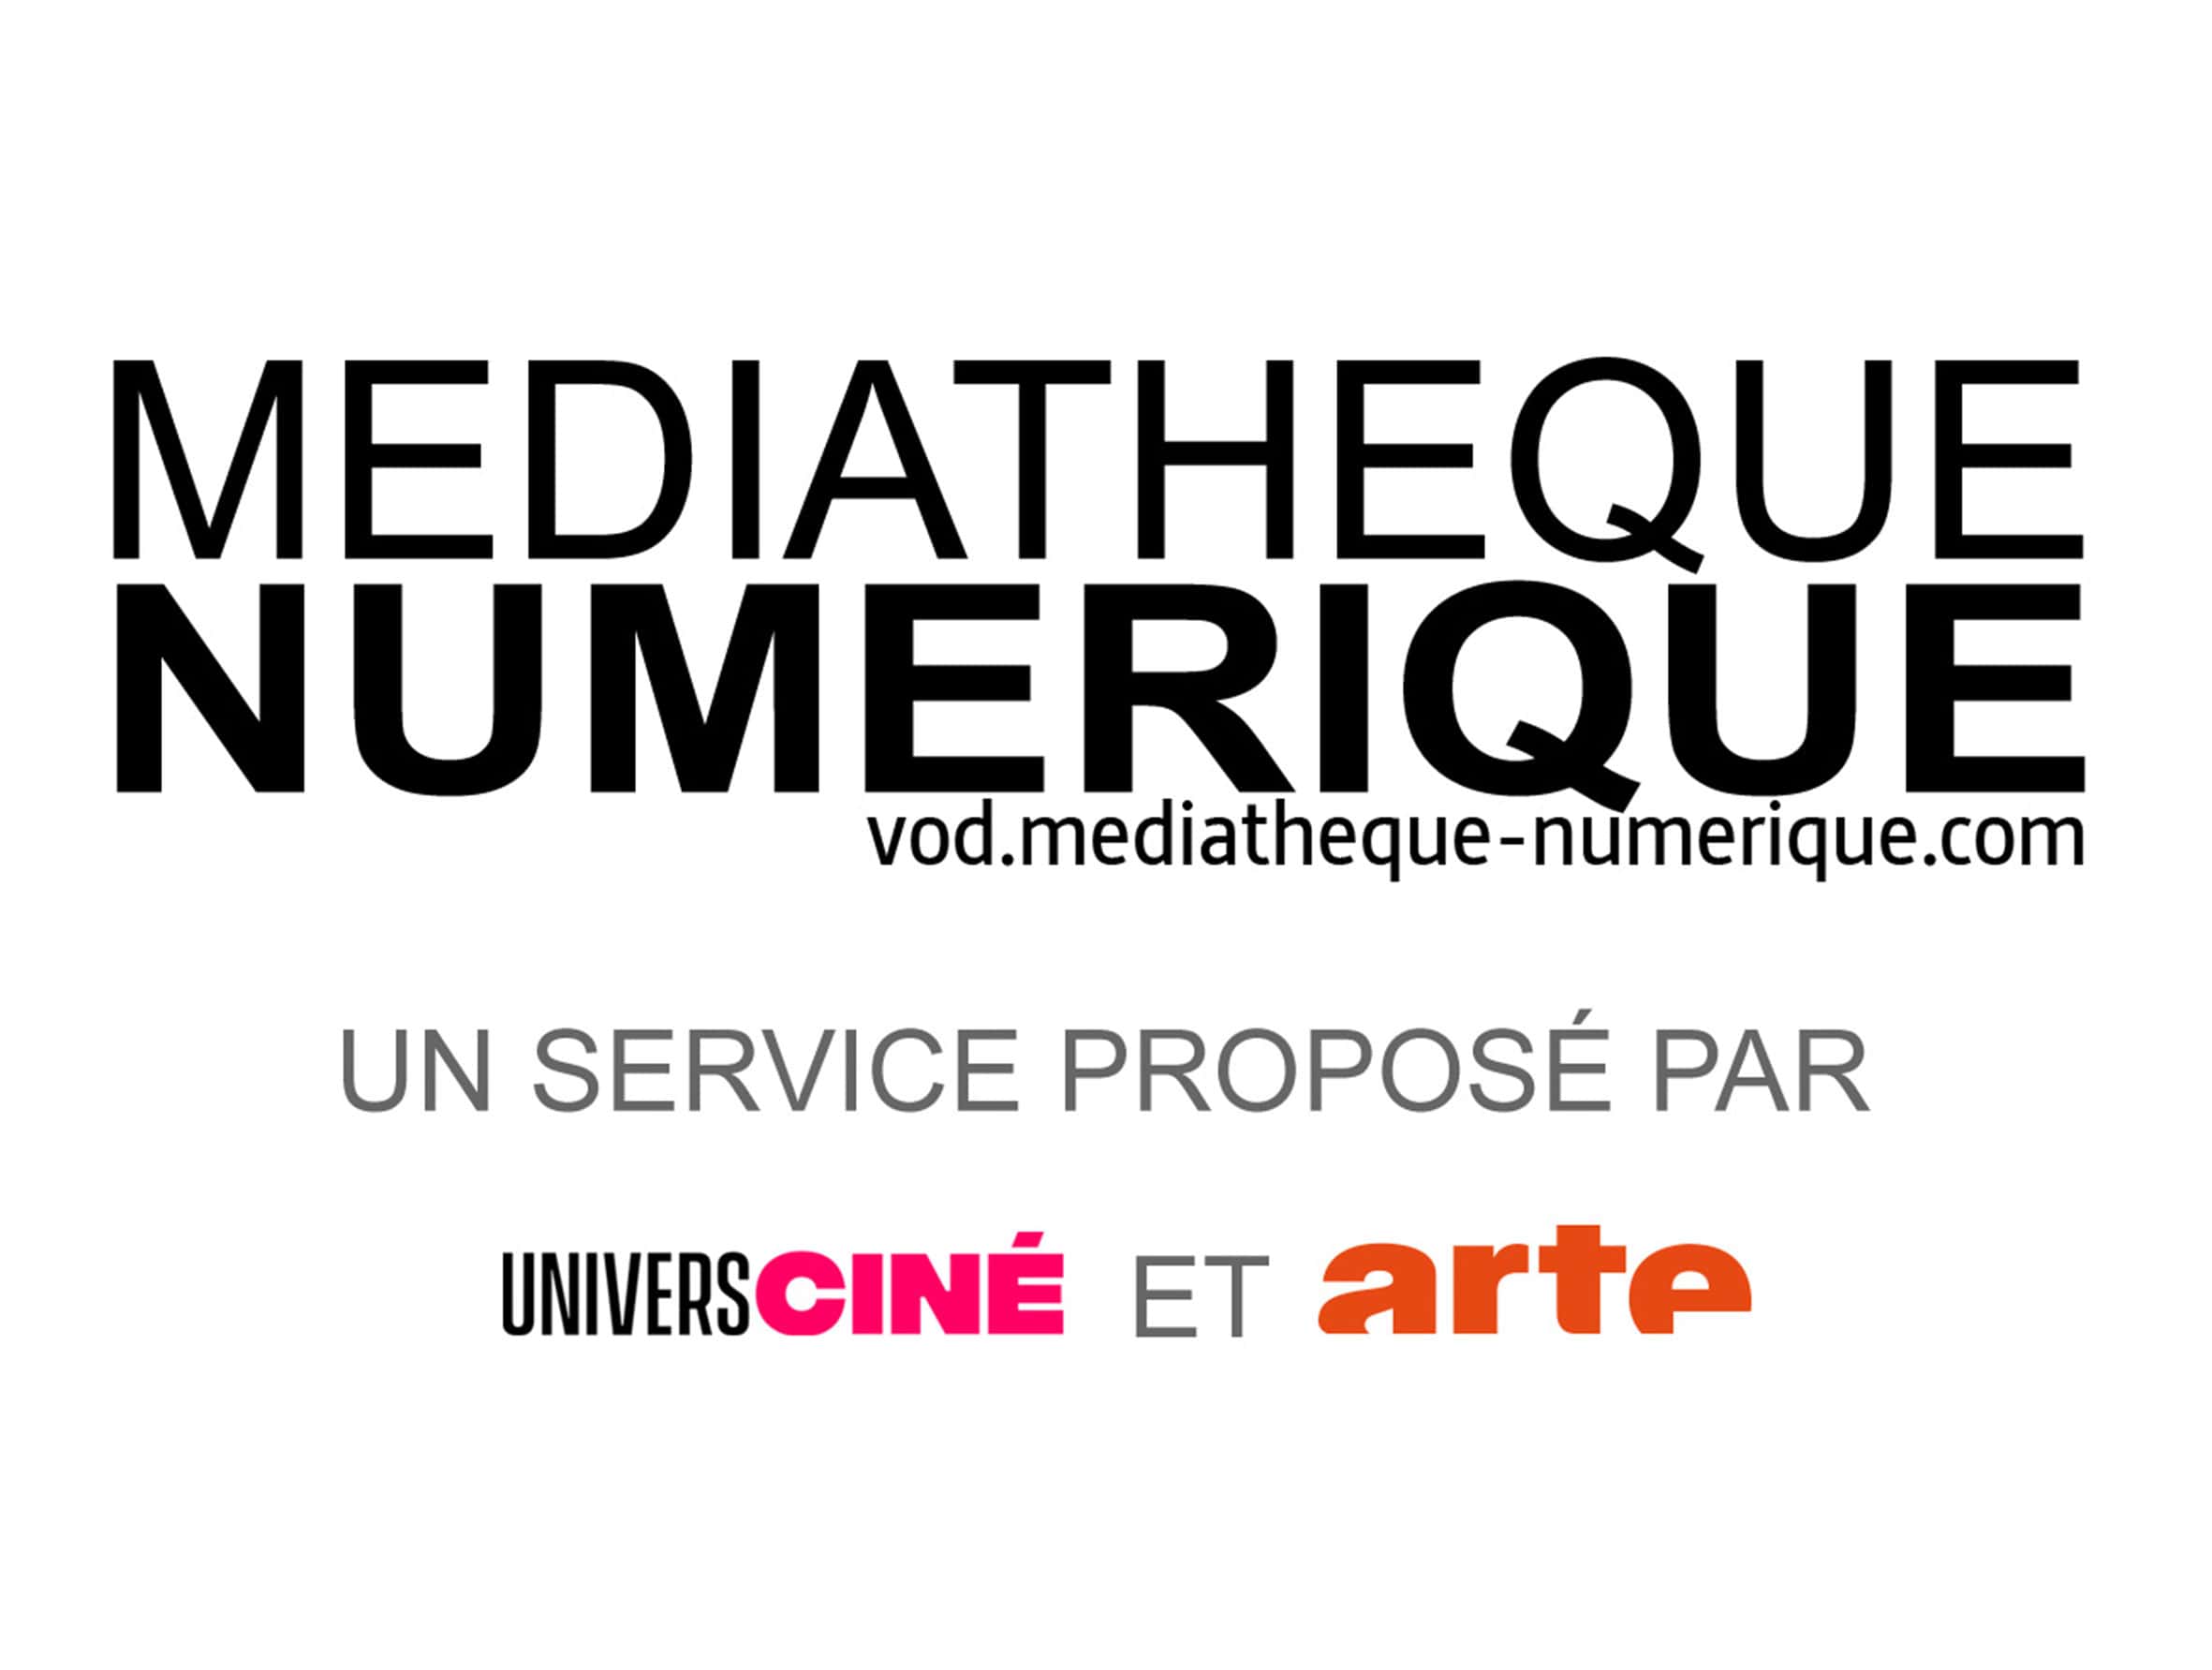 11-mediatheque-numerique-min.jpg